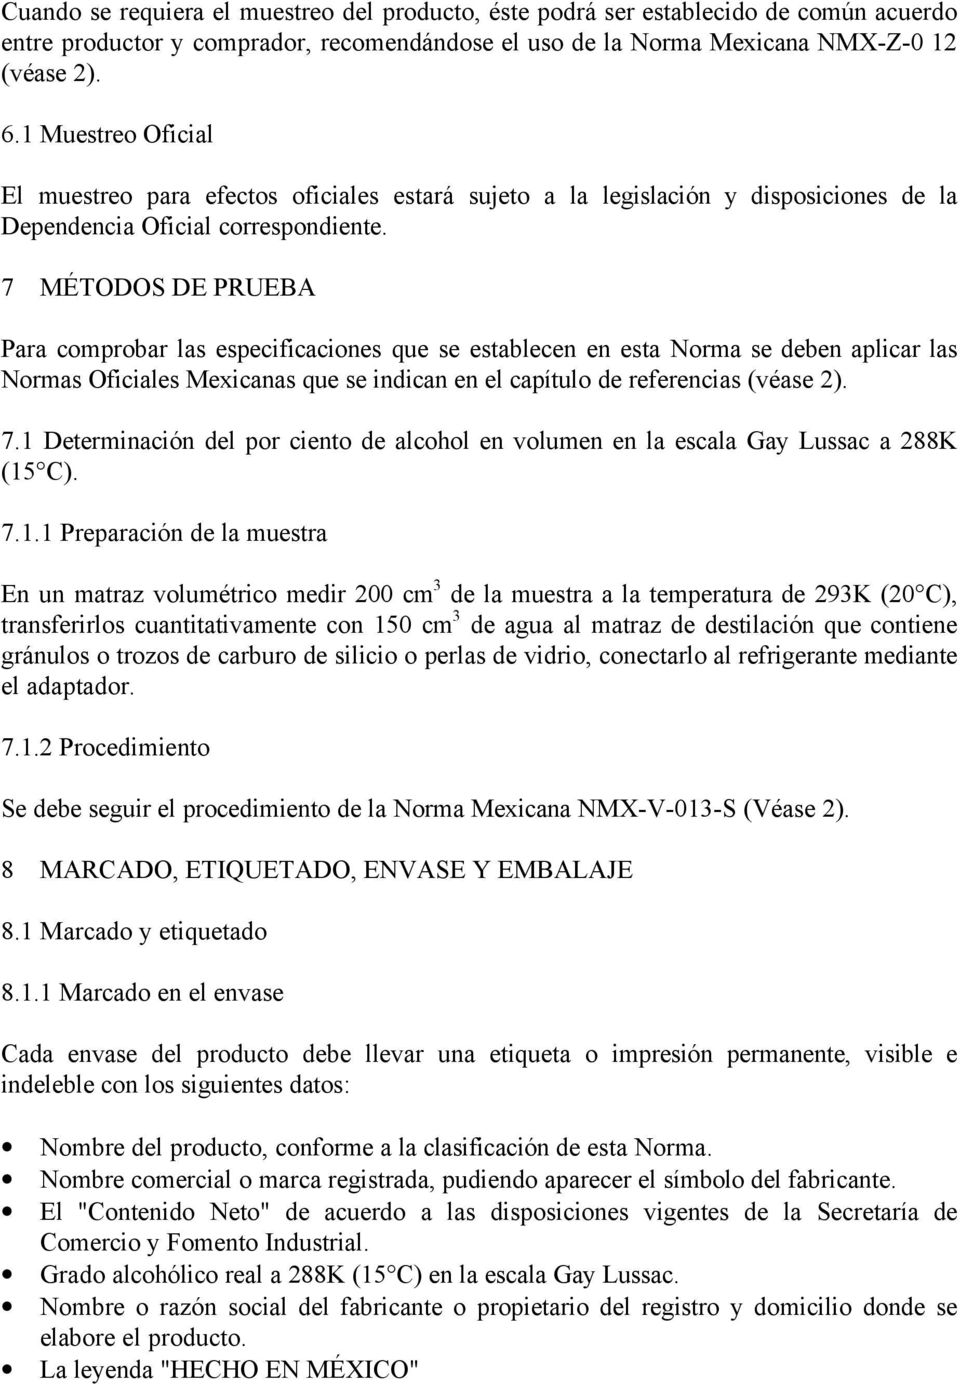 7 MÉTODOS DE PRUEBA Para comprobar las especificaciones que se establecen en esta Norma se deben aplicar las Normas Oficiales Mexicanas que se indican en el capítulo de referencias (véase 2). 7.